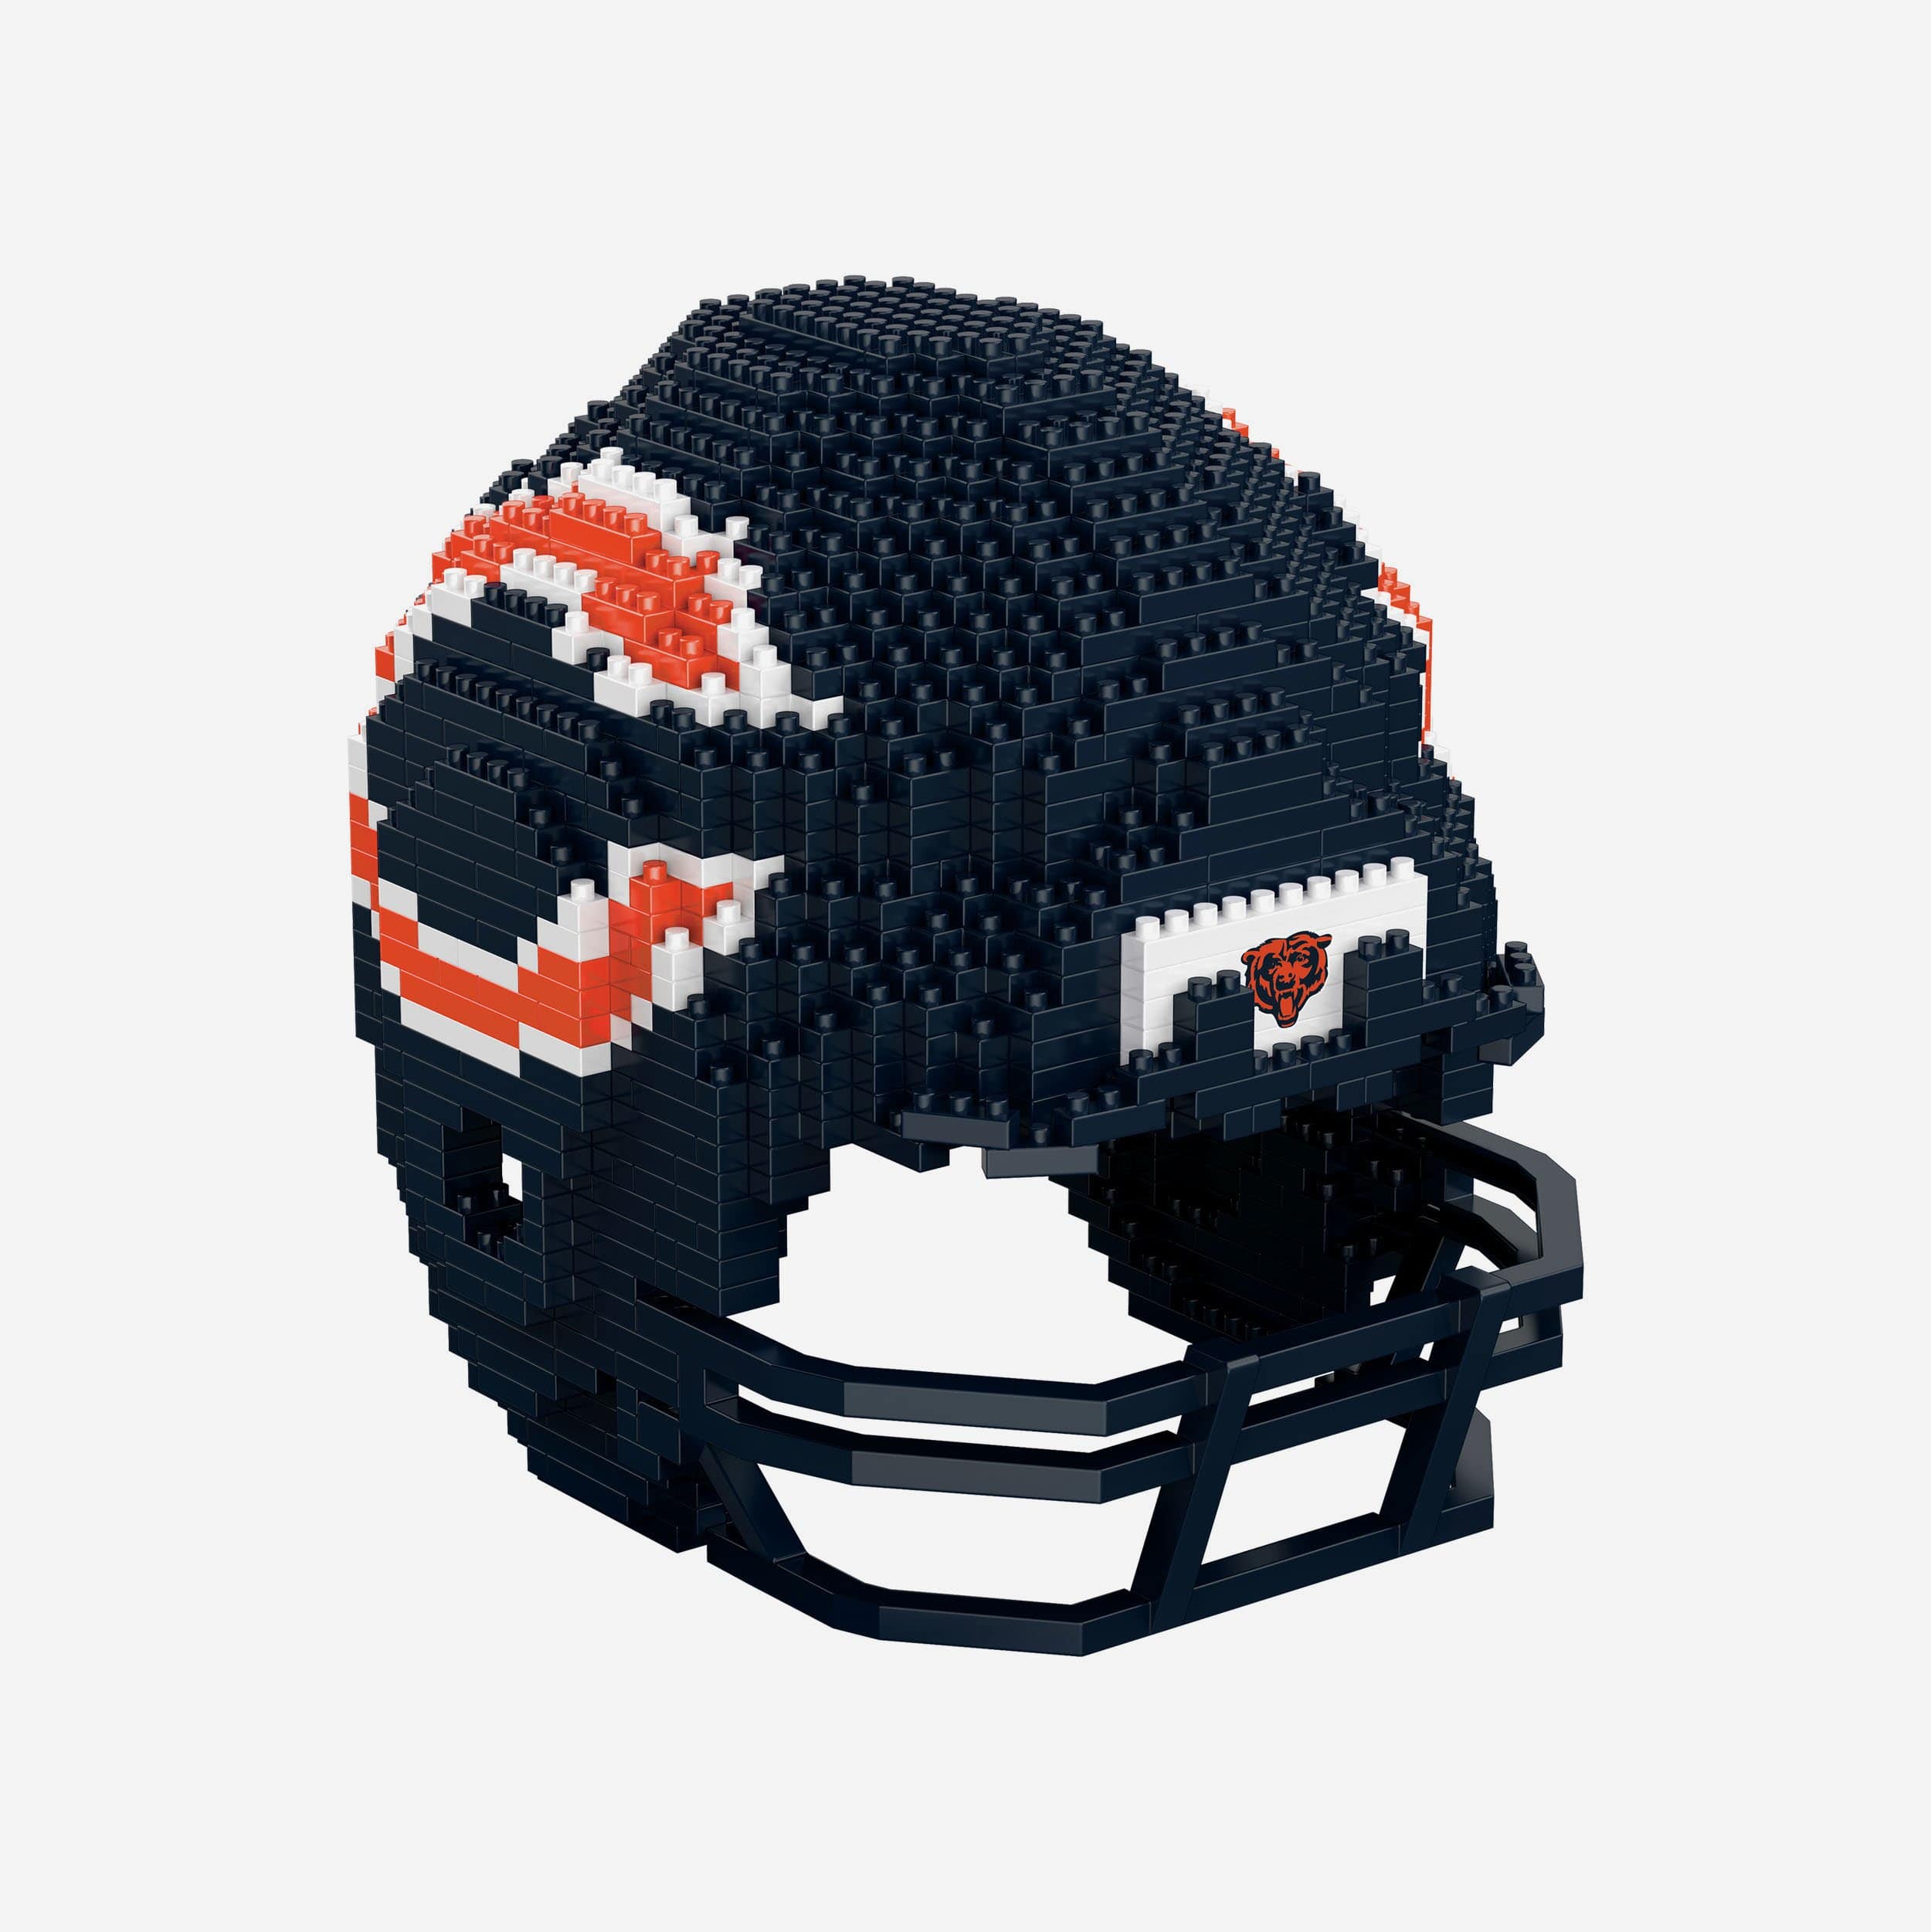 21 NFL Helmet Redesign- Bears  Chicago bears helmet, Chicago